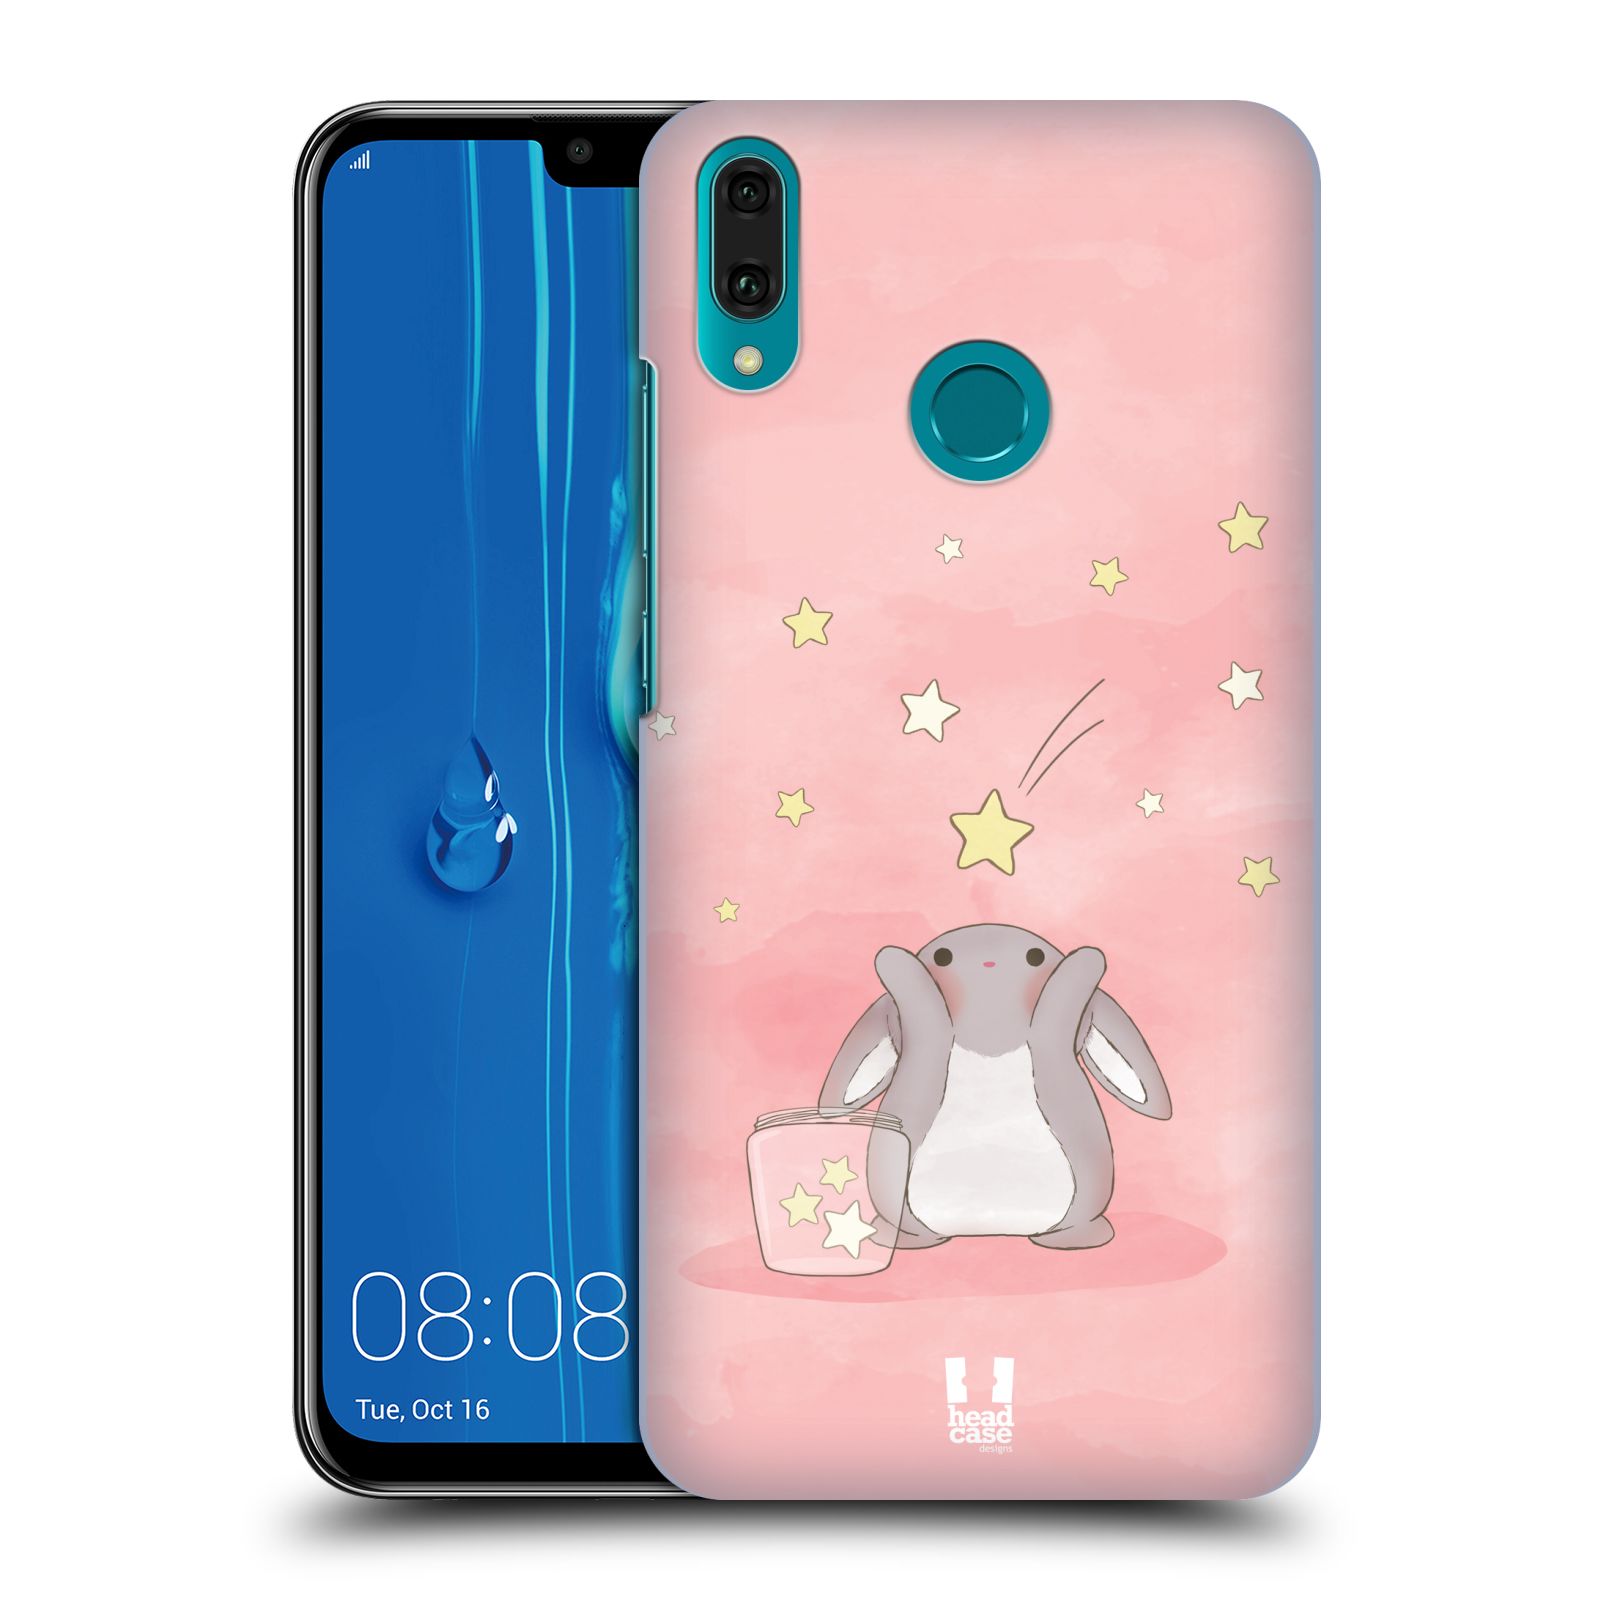 Pouzdro na mobil Huawei Y9 2019 - HEAD CASE - vzor králíček a hvězdy růžová